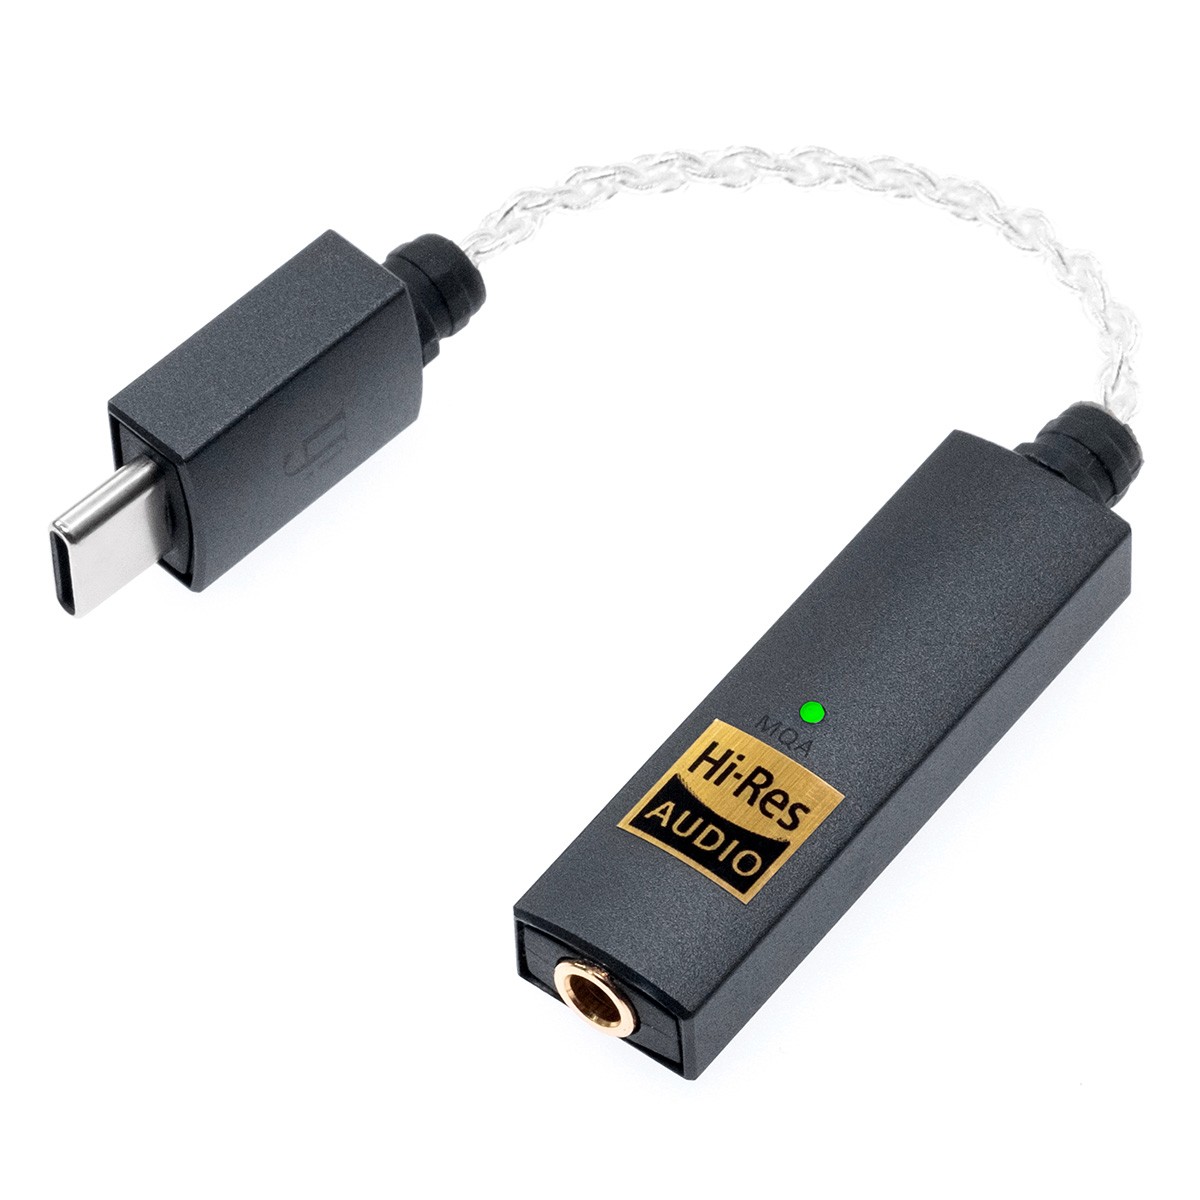 IFI AUDIO GO LINK Portable DAC Adapter ES9219MQ/Q USB-C to Jack 3.5mm 32bit 384kHz DSD256 MQA